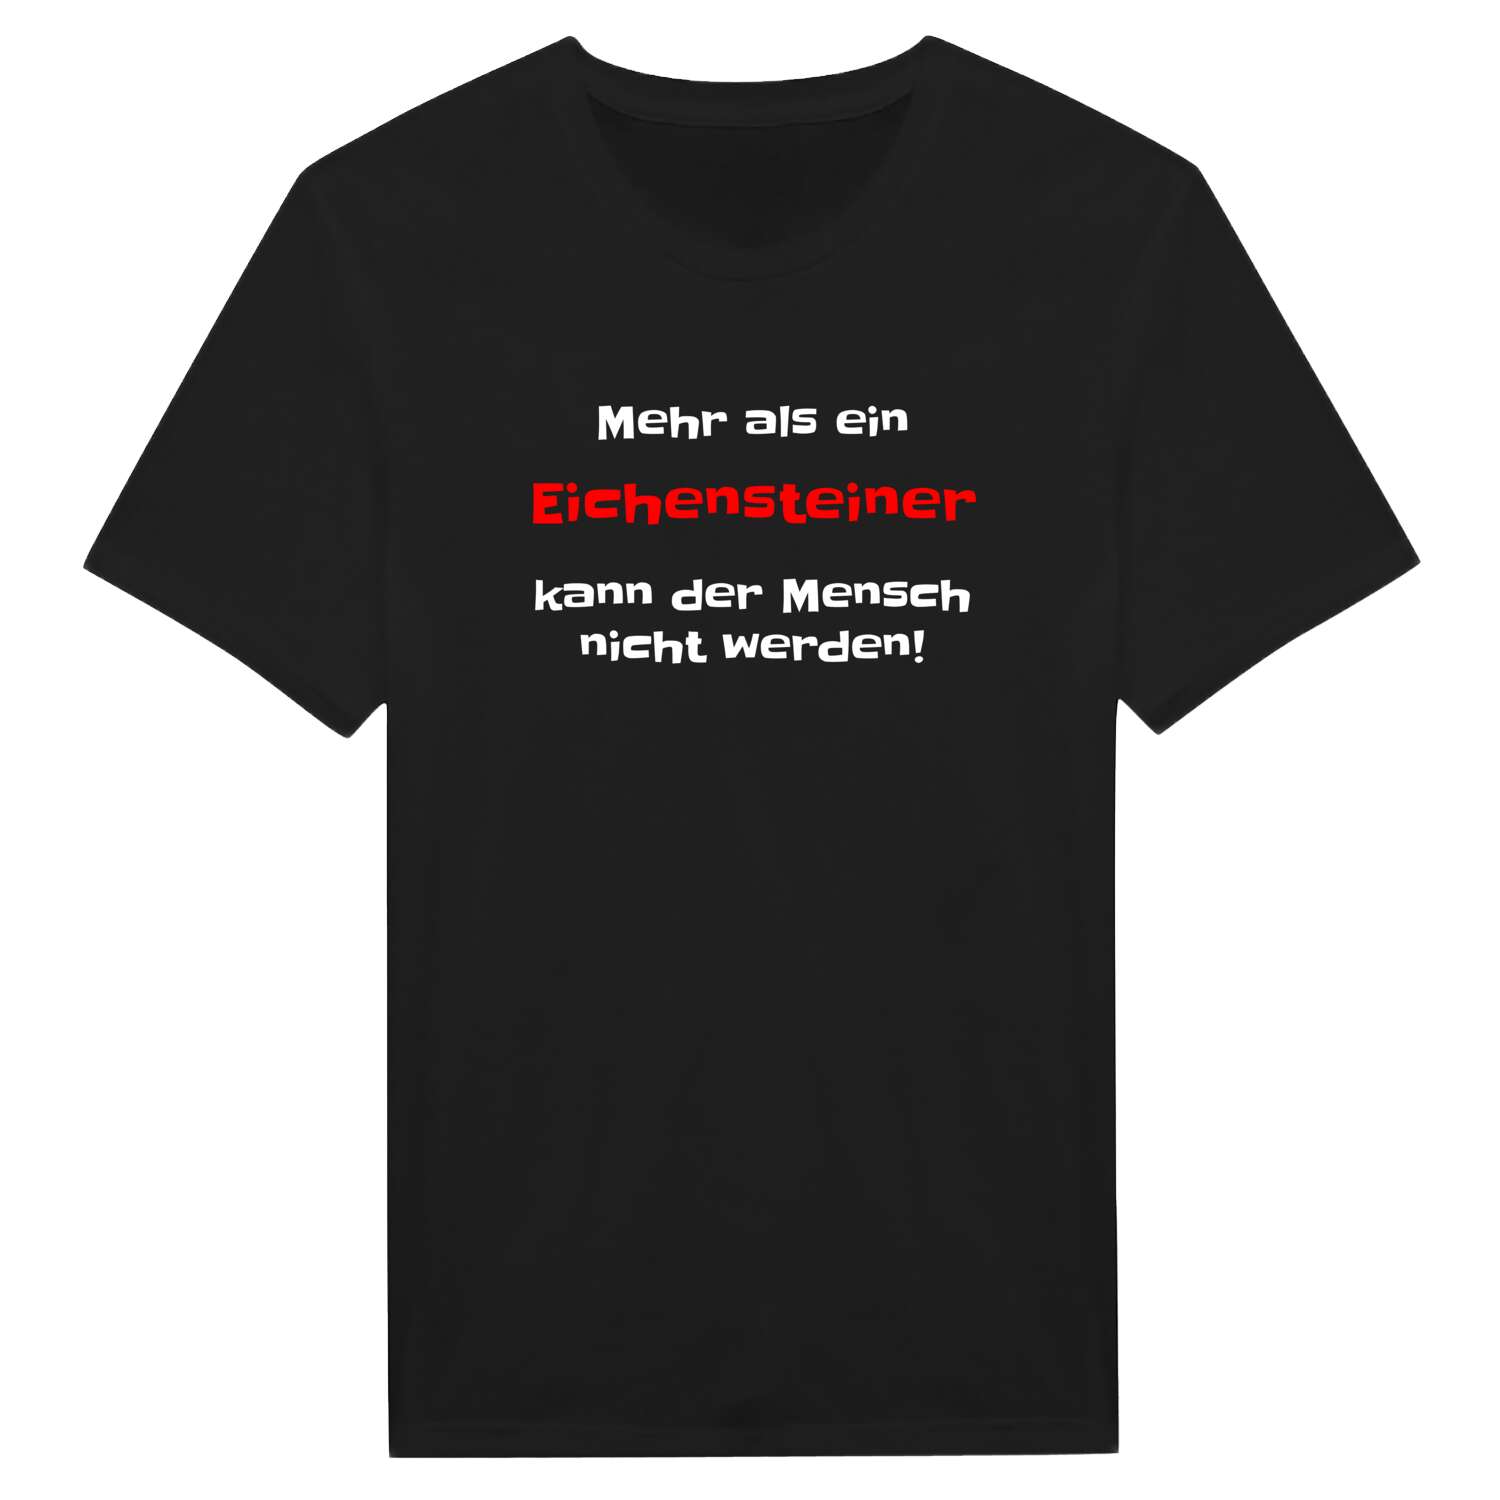 Eichenstein T-Shirt »Mehr als ein«